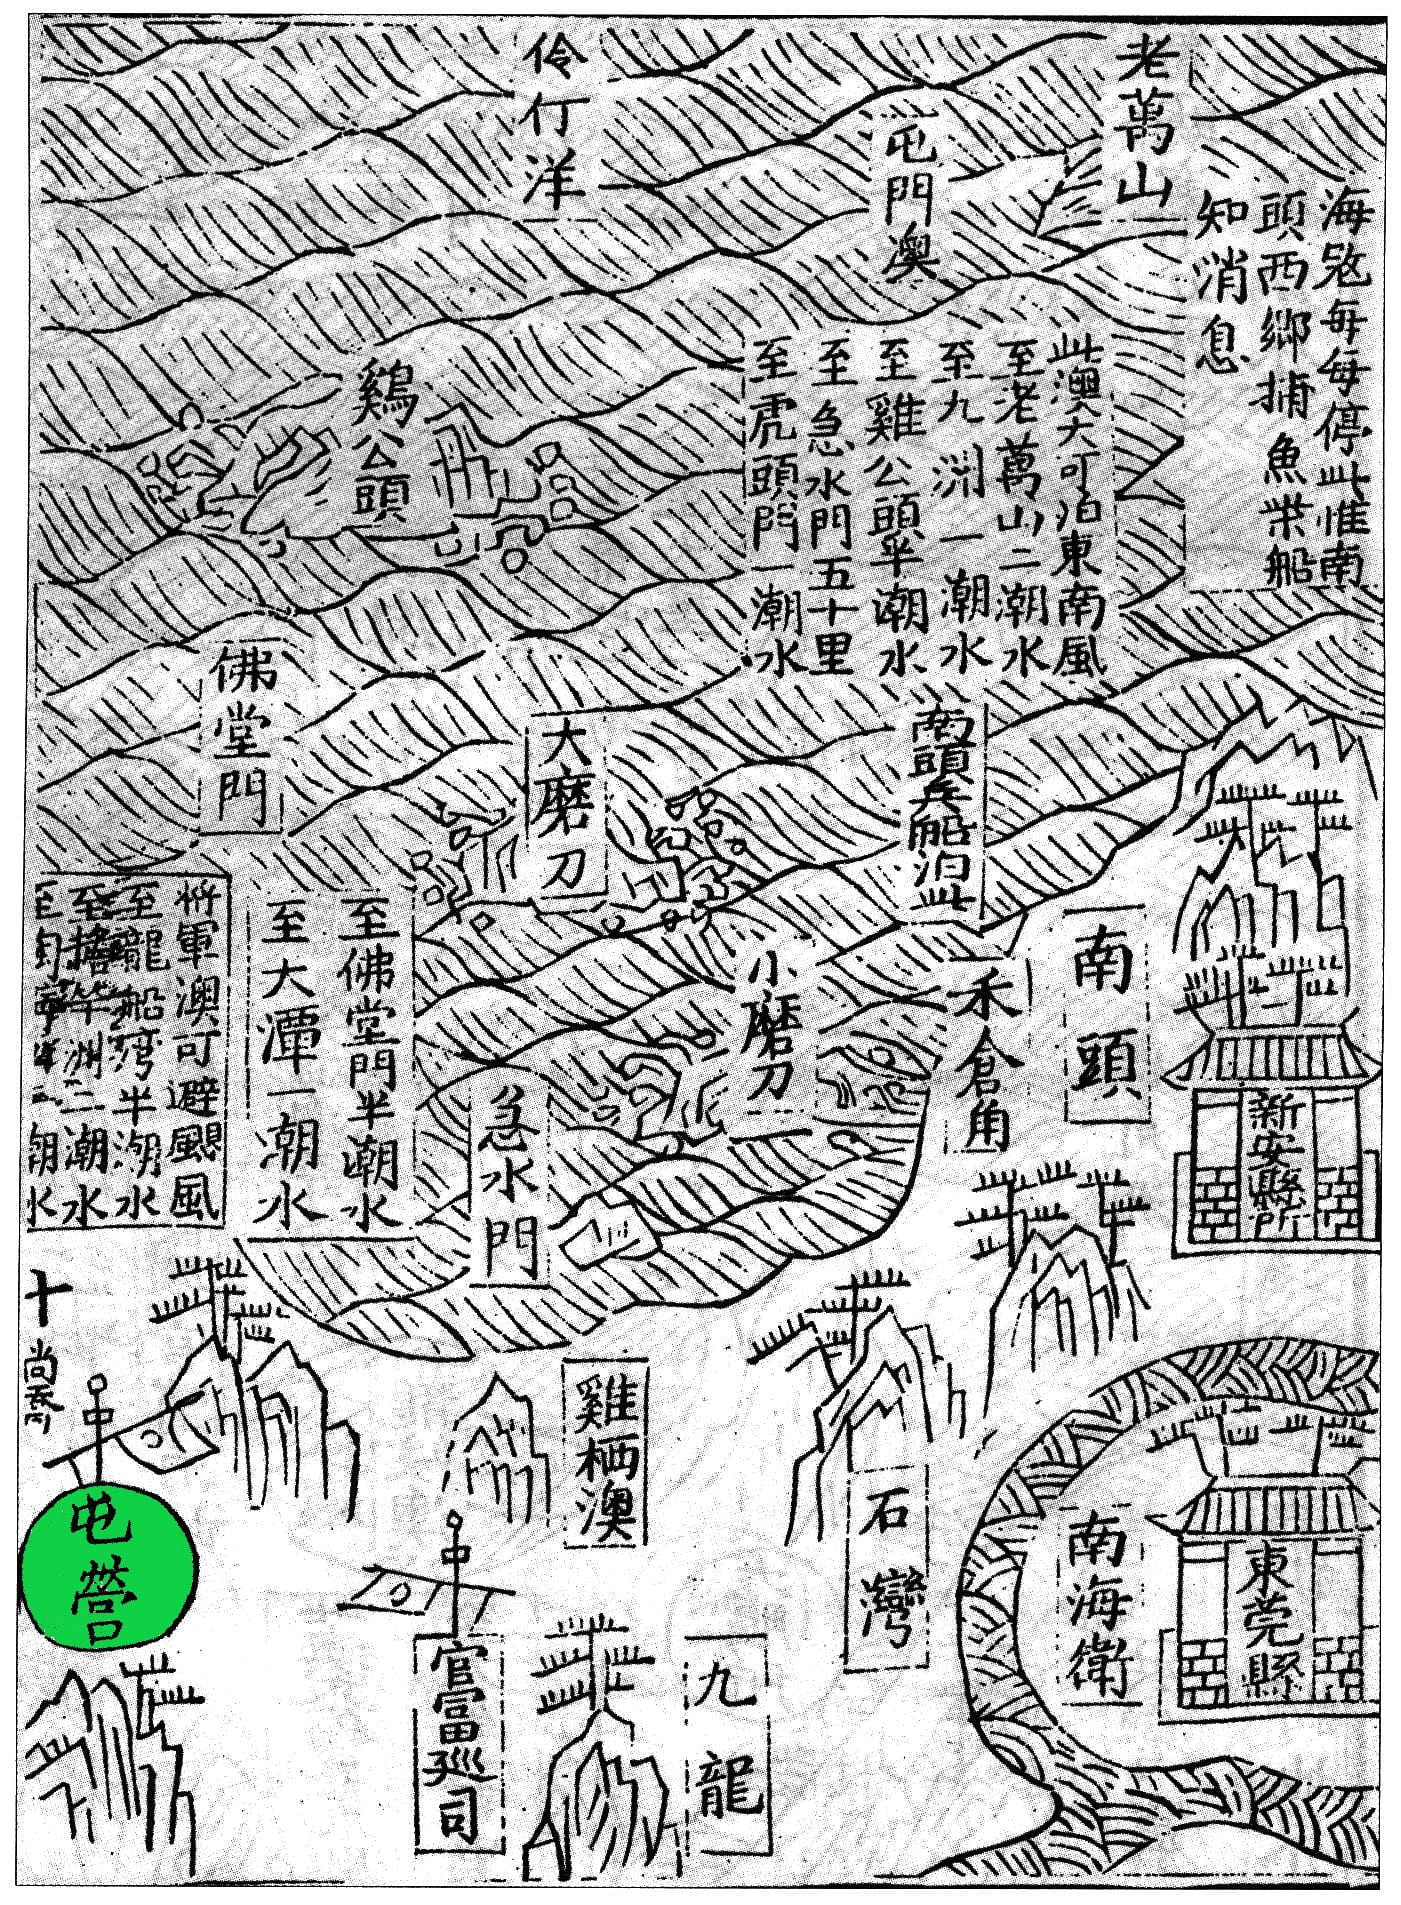 明萬曆九年（1581）應檟編輯、劉堯誨重修的《蒼梧總督軍門志》中的《全廣海圖》標注有「屯營」的地名，即是今日的屯門。